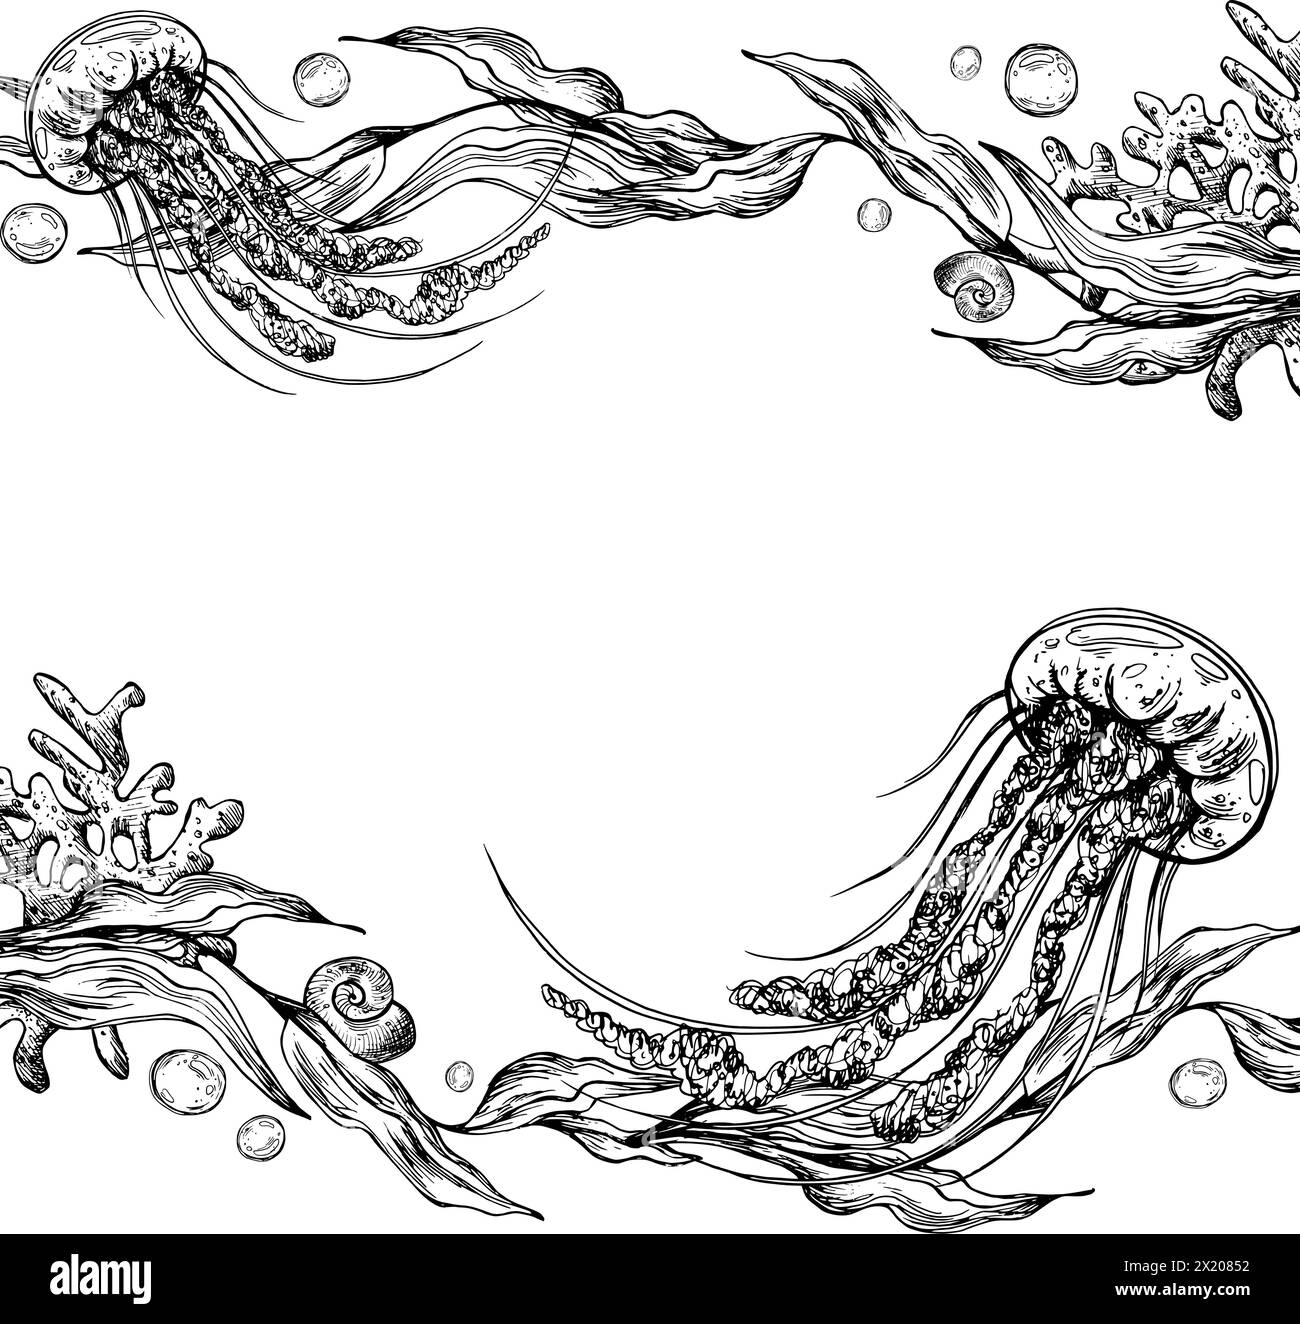 Unterwasserwelt Clipart mit Meerestieren Quallen, Blasen, Korallen und Algen. Grafische Abbildung, handgezeichnet mit schwarzer Tinte. Vorlage, Rahmen EPS Stock Vektor